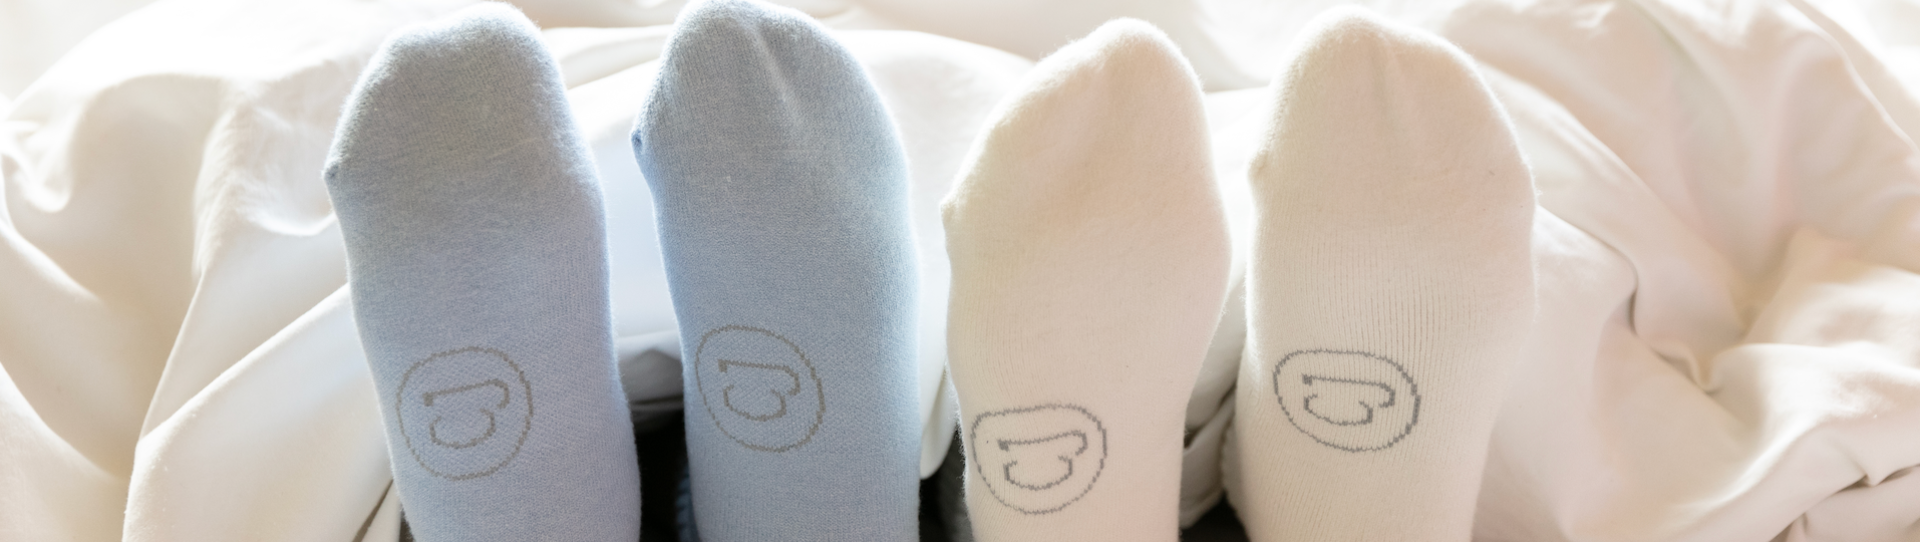 Les avantages de porter des chaussettes au lit